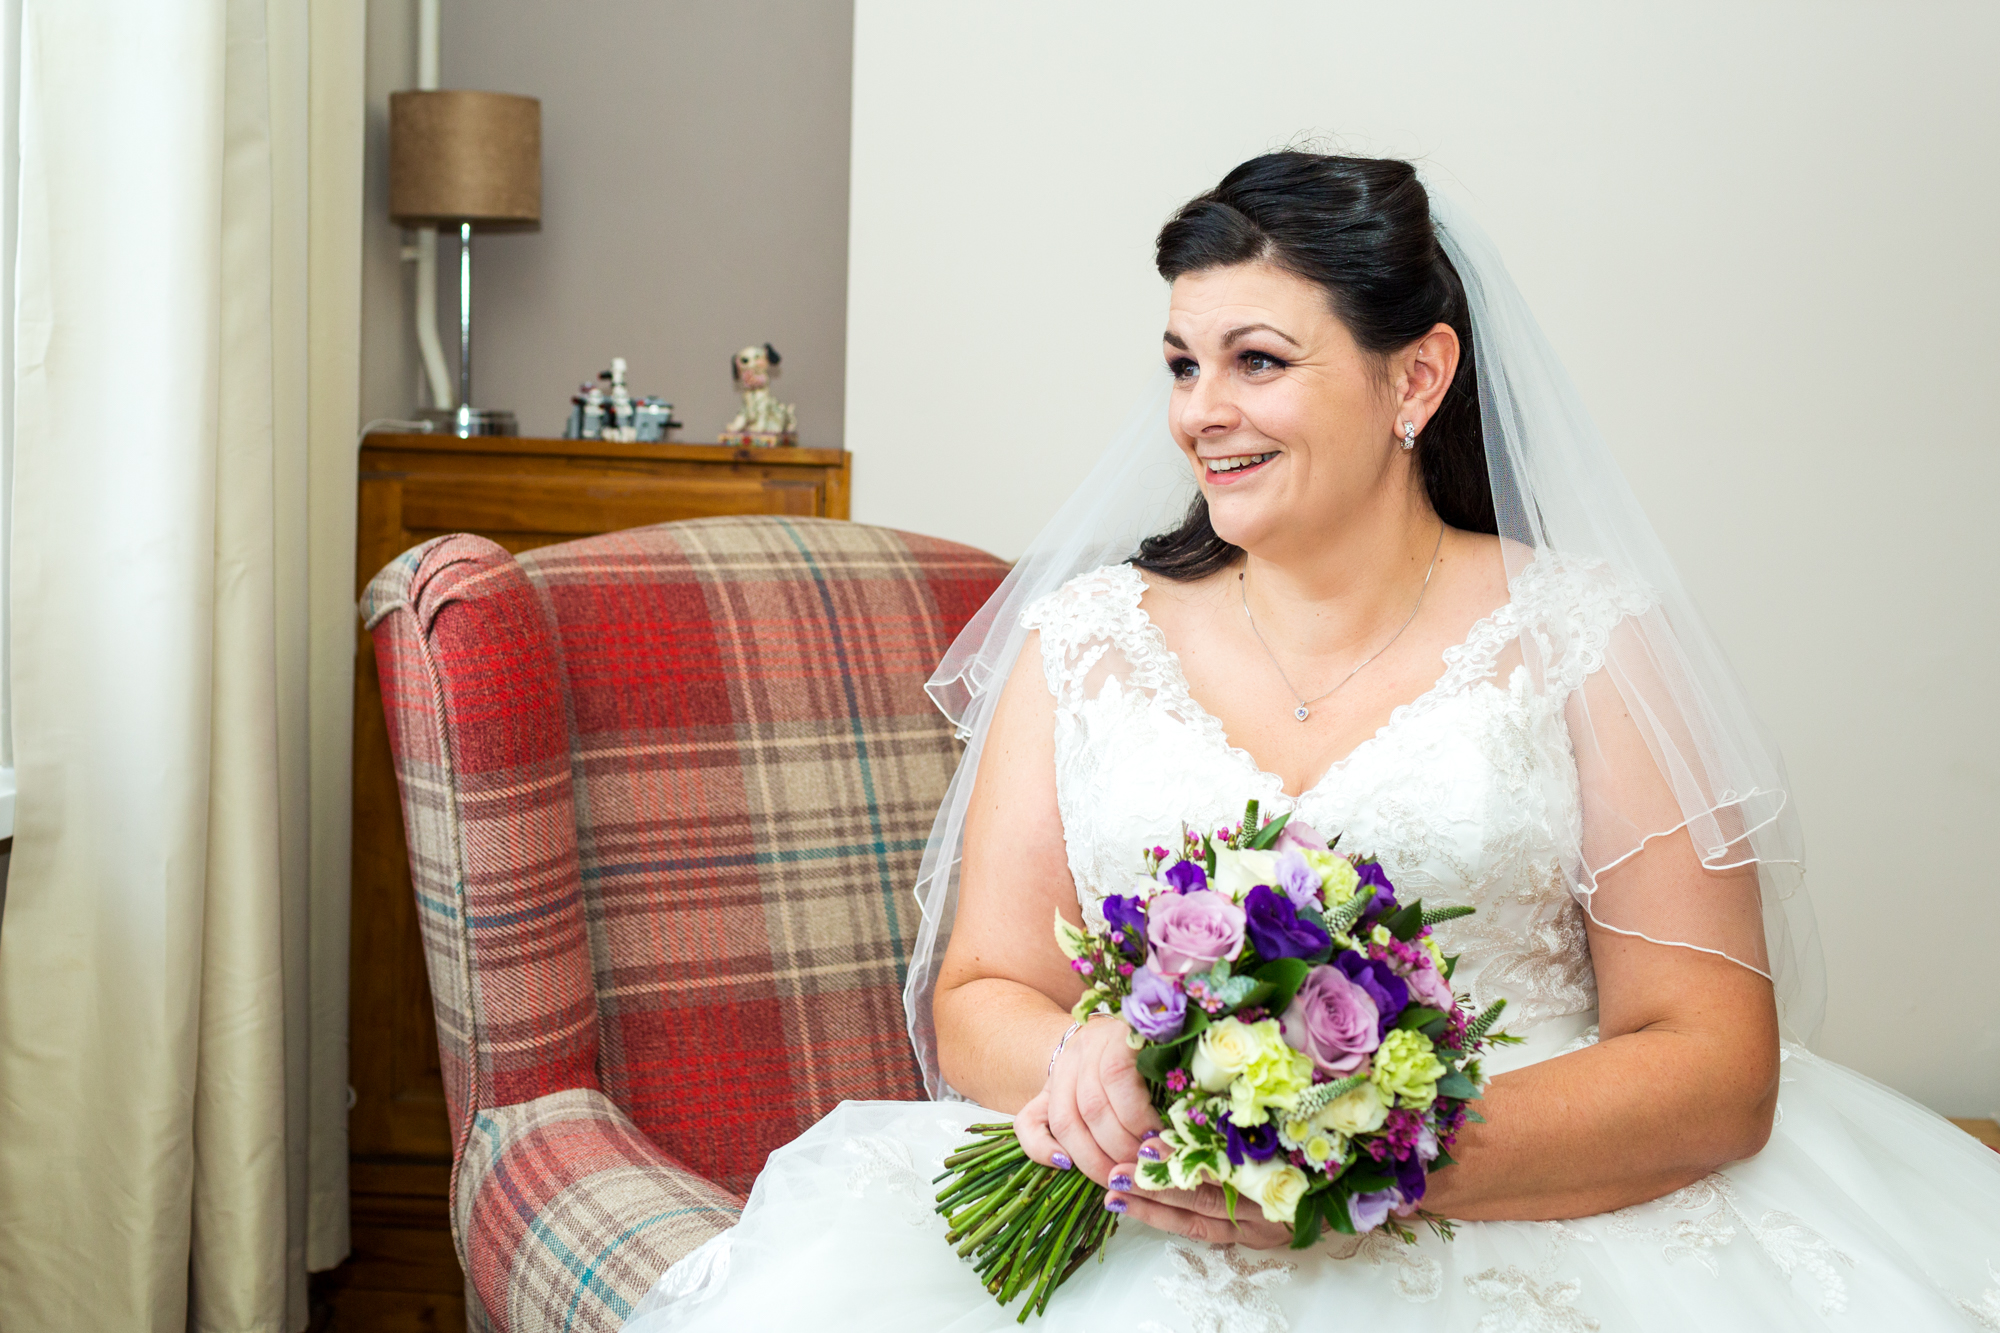 bridal portraits south wales wedding photographer, pontypridd golf club